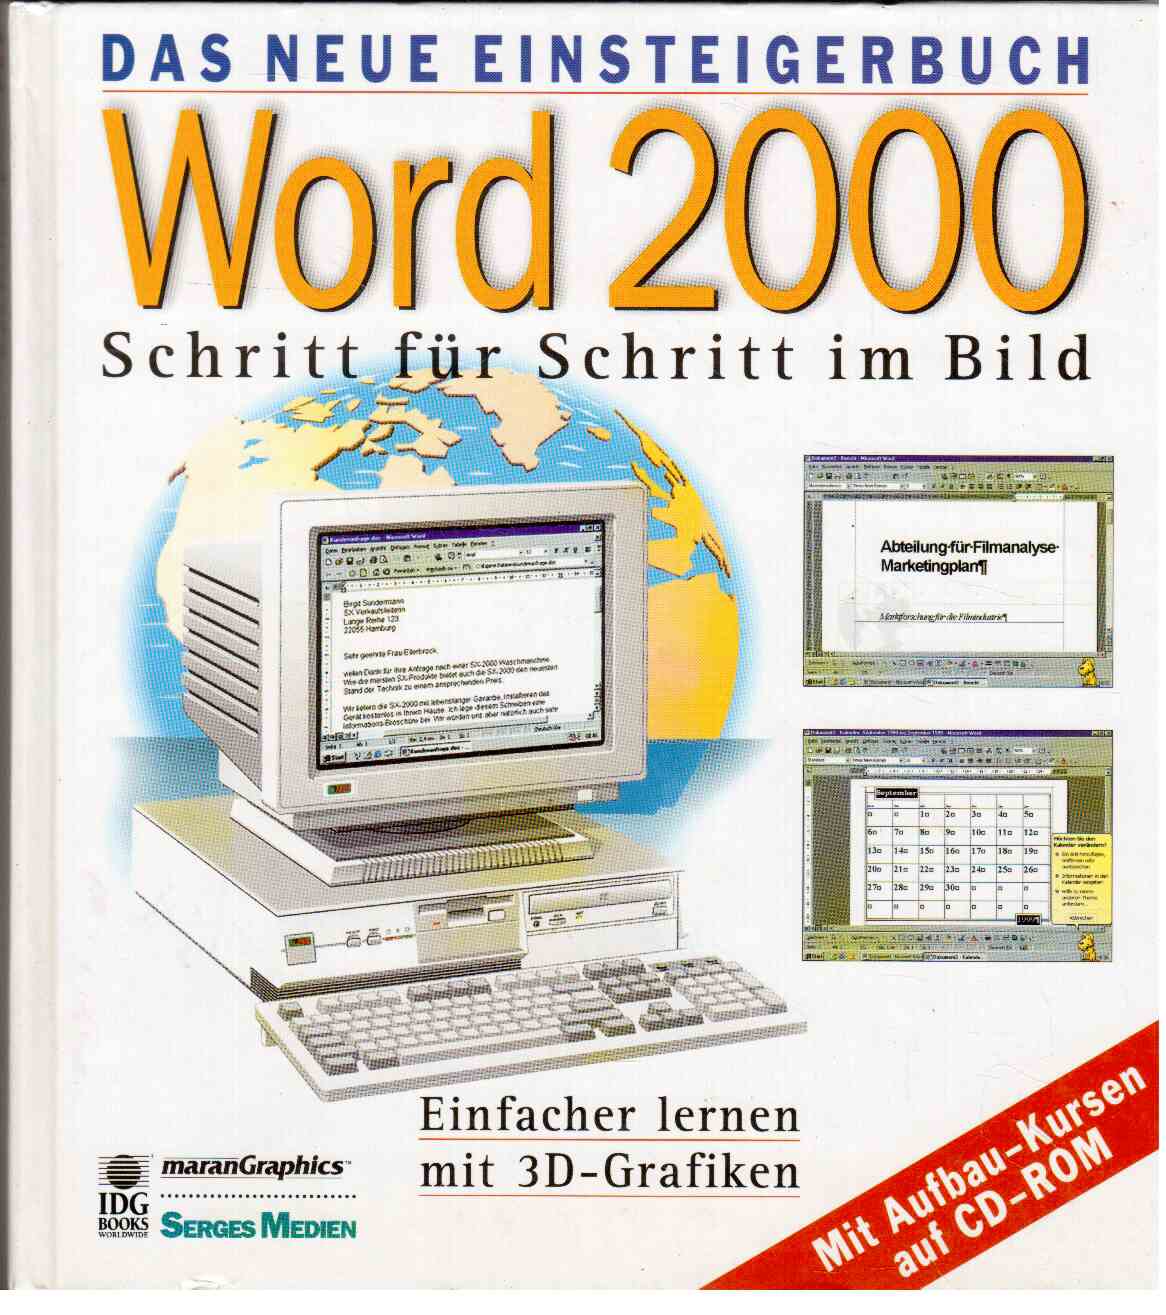 Das neue Einsteigerbuch : Word 2000 - Schritt für Schritt im Bild. Einfacher lernen mit 3D-Grafiken